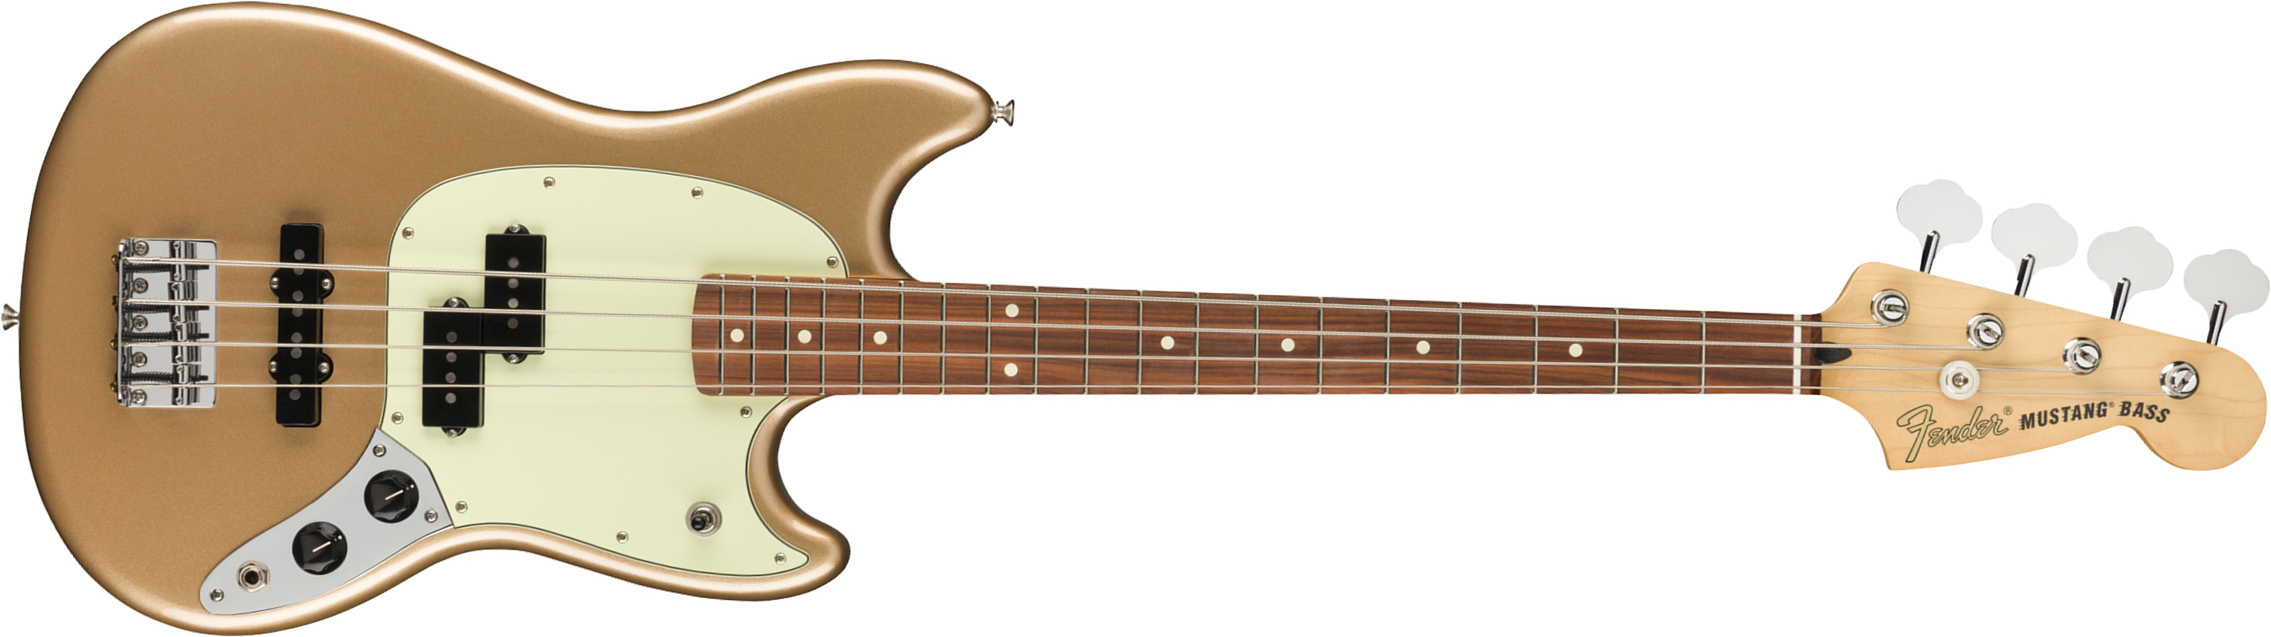 Fender Player Mustang Bass Mex Pf - Firemist Gold - Basse Électrique Enfants - Main picture